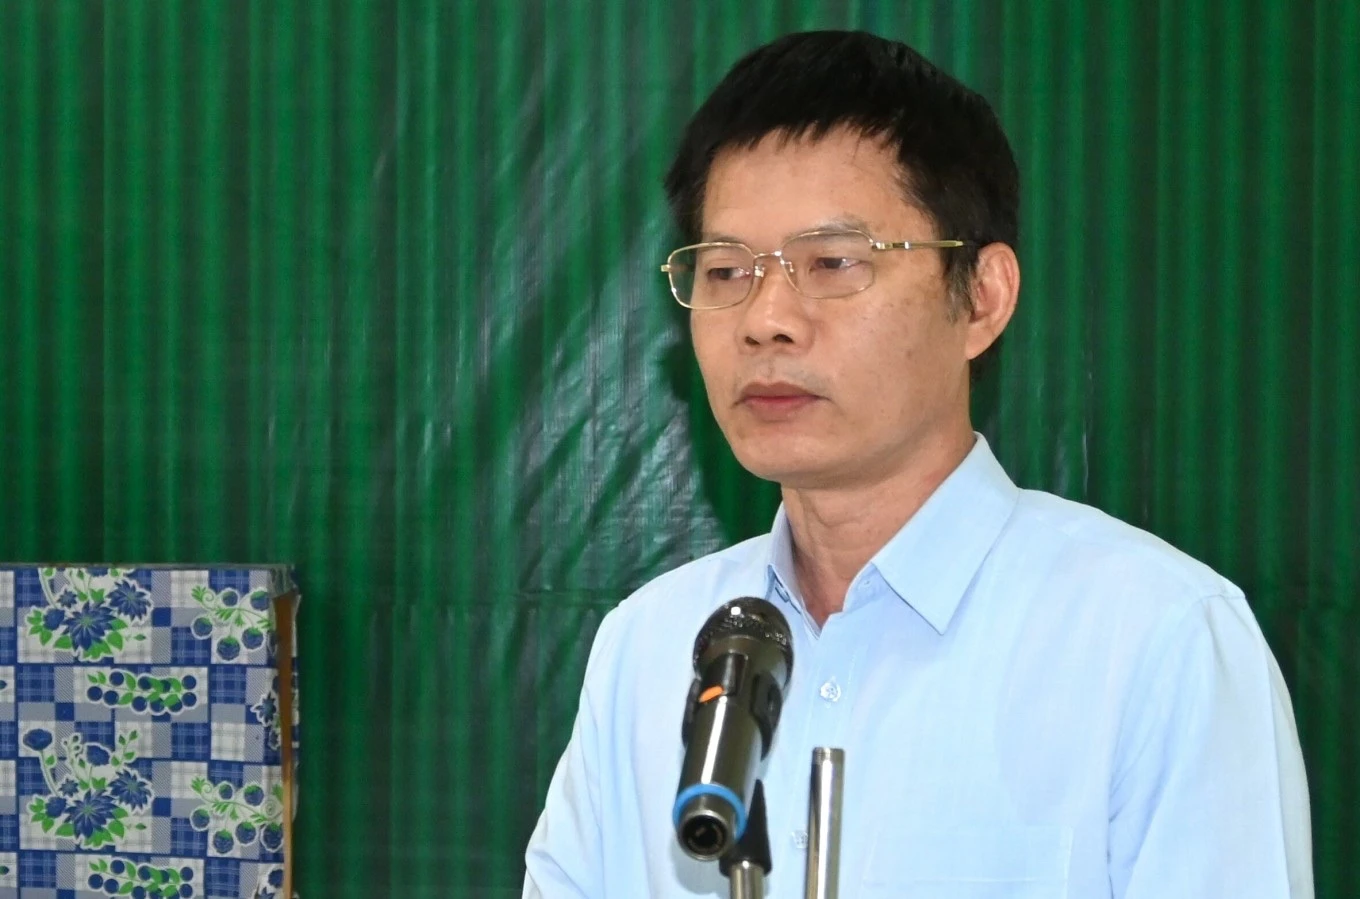 Ông Nguyễn Văn Khước, Phó chủ tịch tỉnh Vĩnh Phúc. Ảnh: Cổng thông tin Vĩnh Phúc